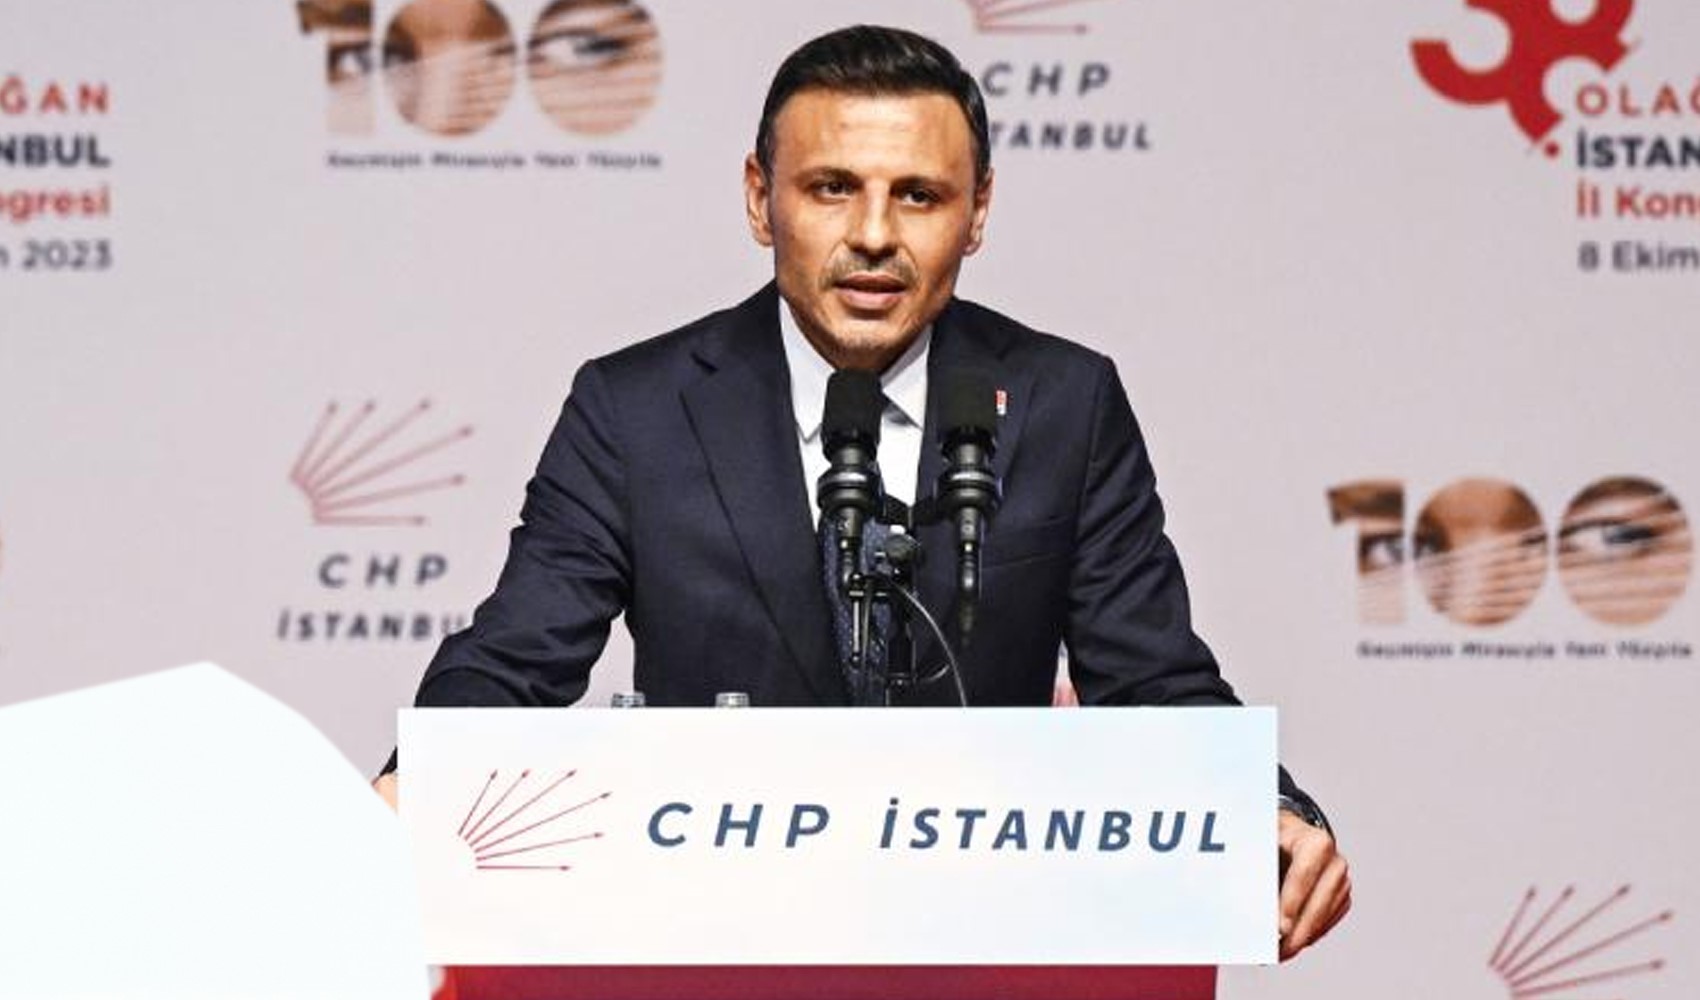 CHP İstanbul İl Başkanı Özgür Çelik sandık güvenliği için telefon numarası paylaştı